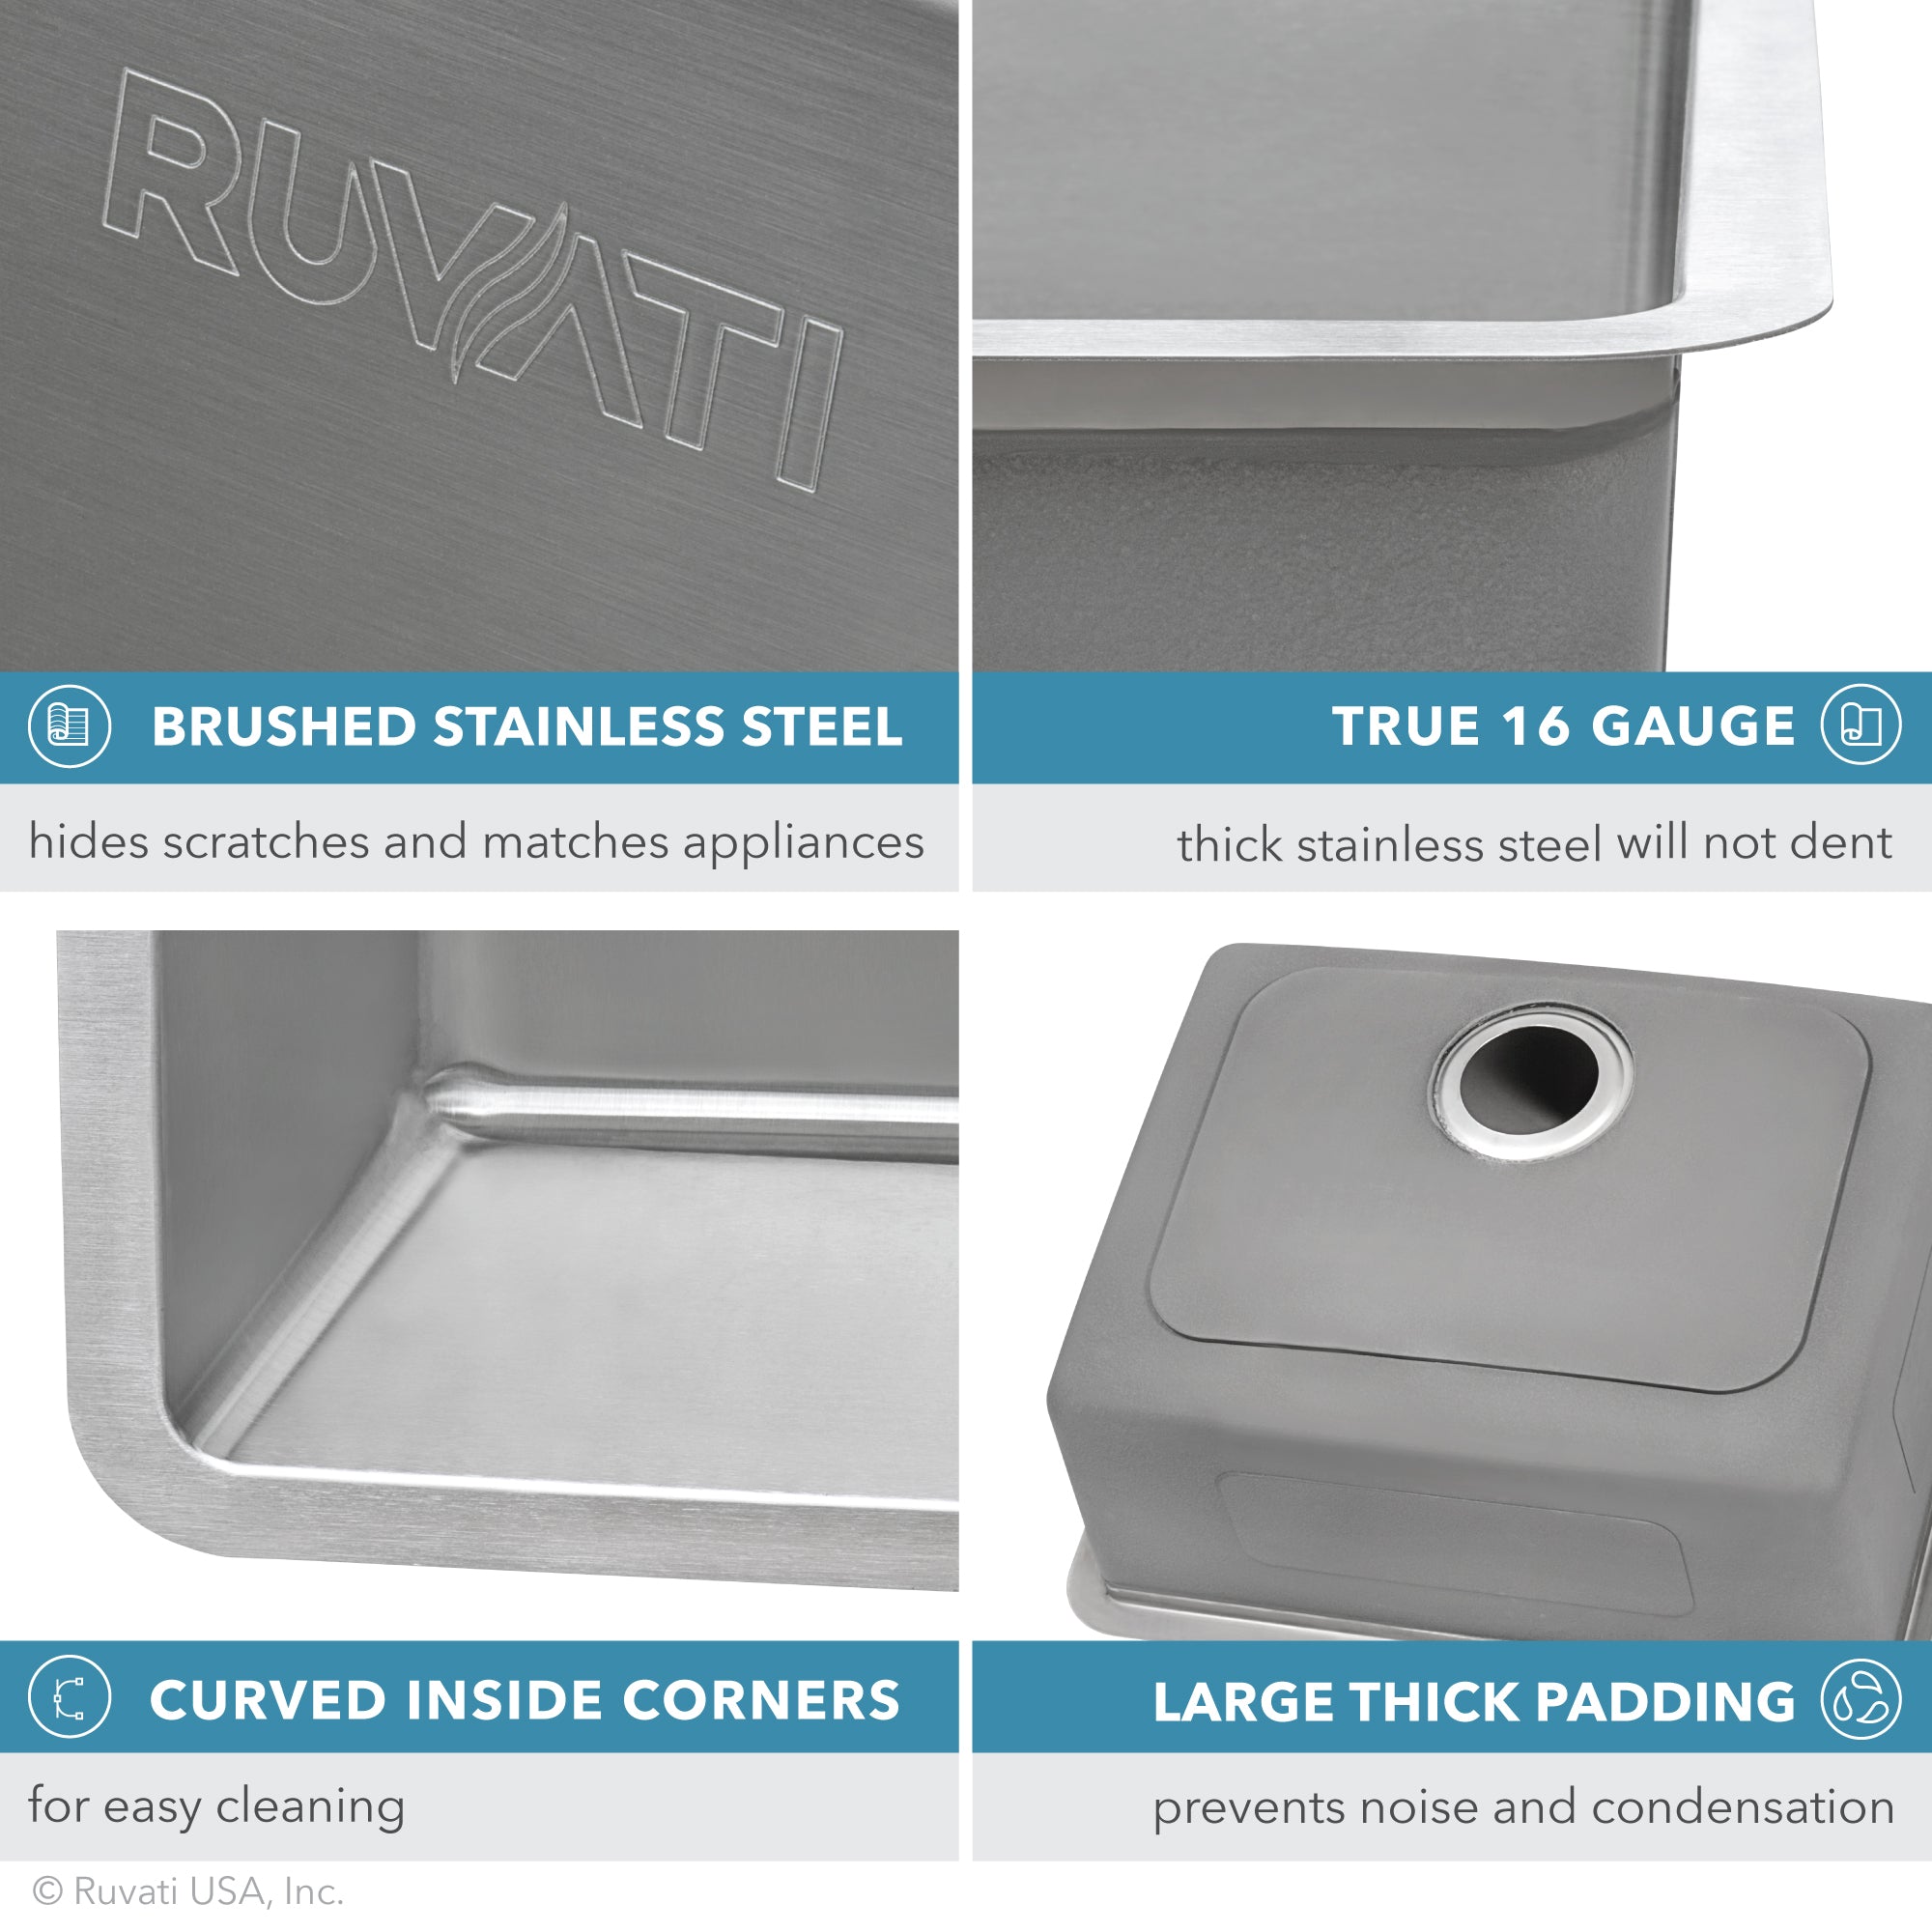 23-inch Undermount Kitchen Sink 16 Gauge Stainless Steel Single Bowl